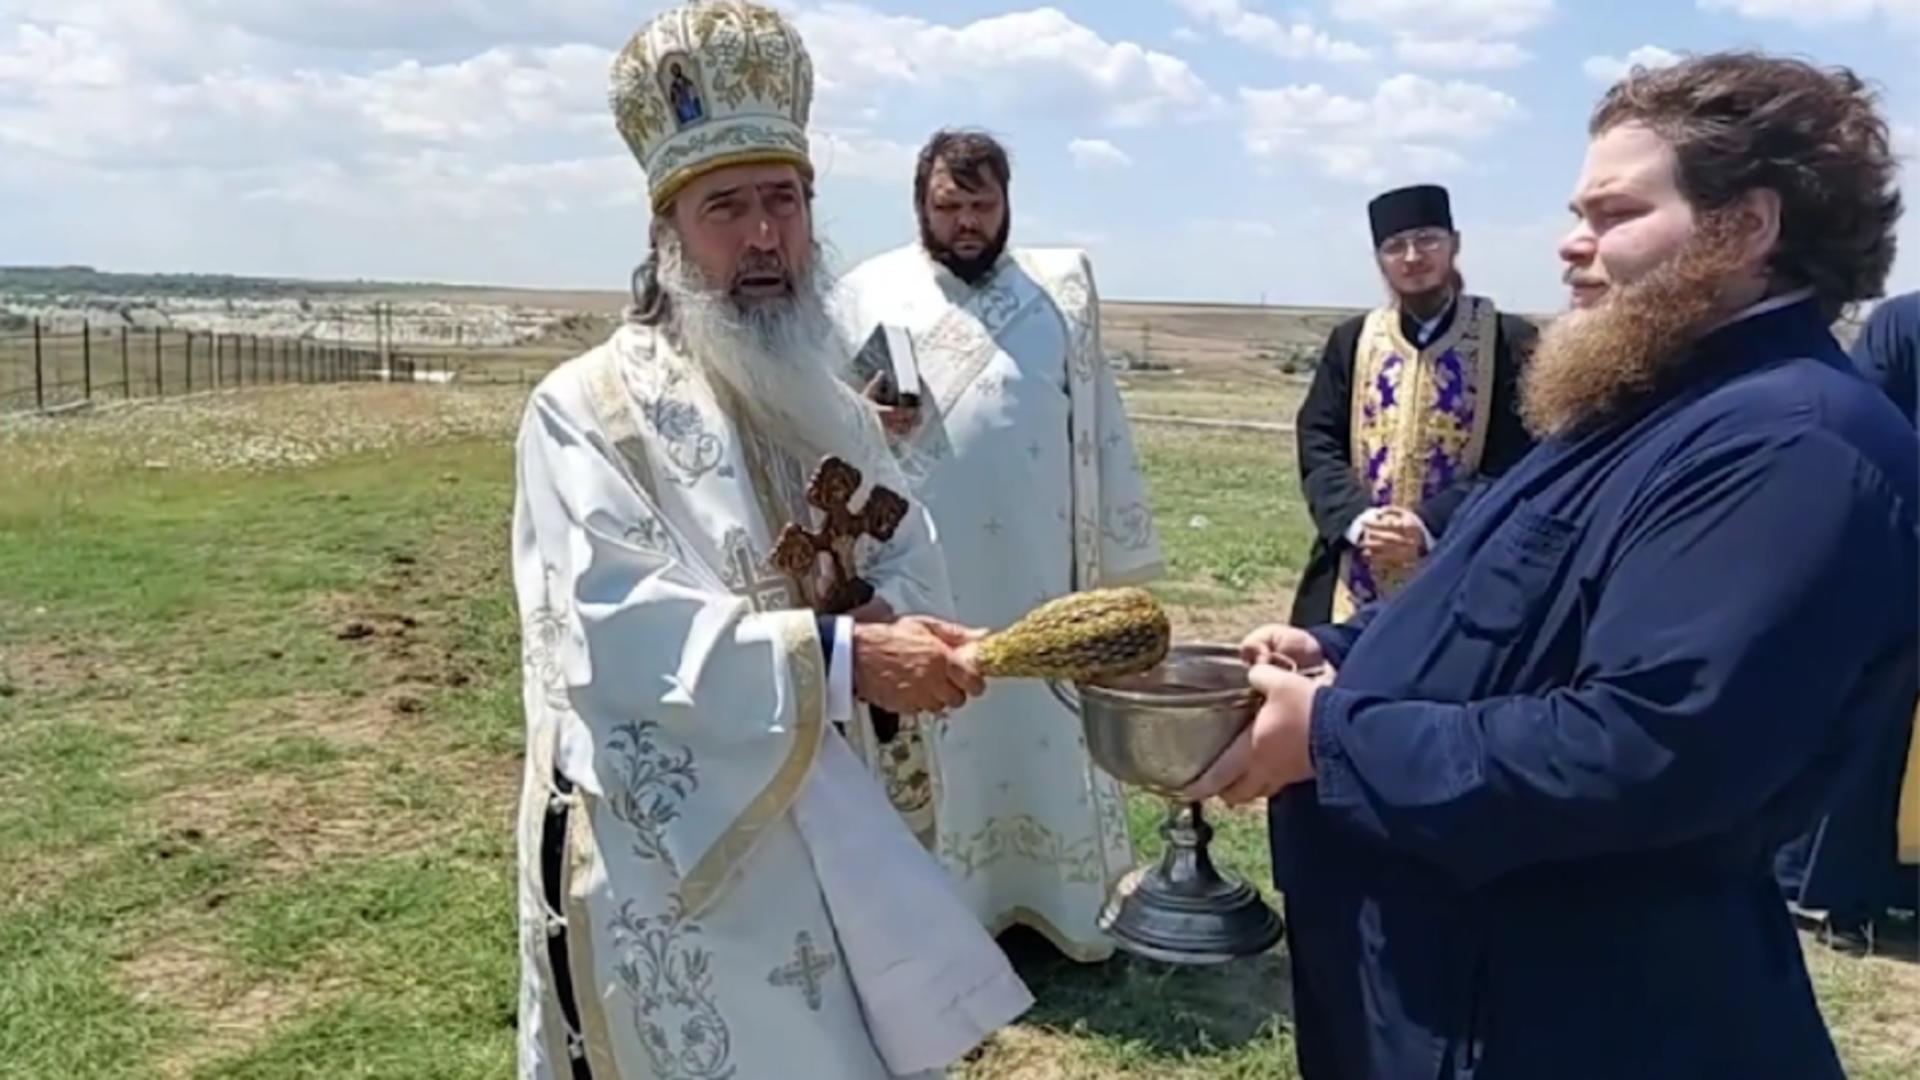 Replica dată de ÎPS Teodosie lui Cristian Tudor Popescu, după ce jurnalistul a declarat că sfinții se hrăneau cu lăcuste  